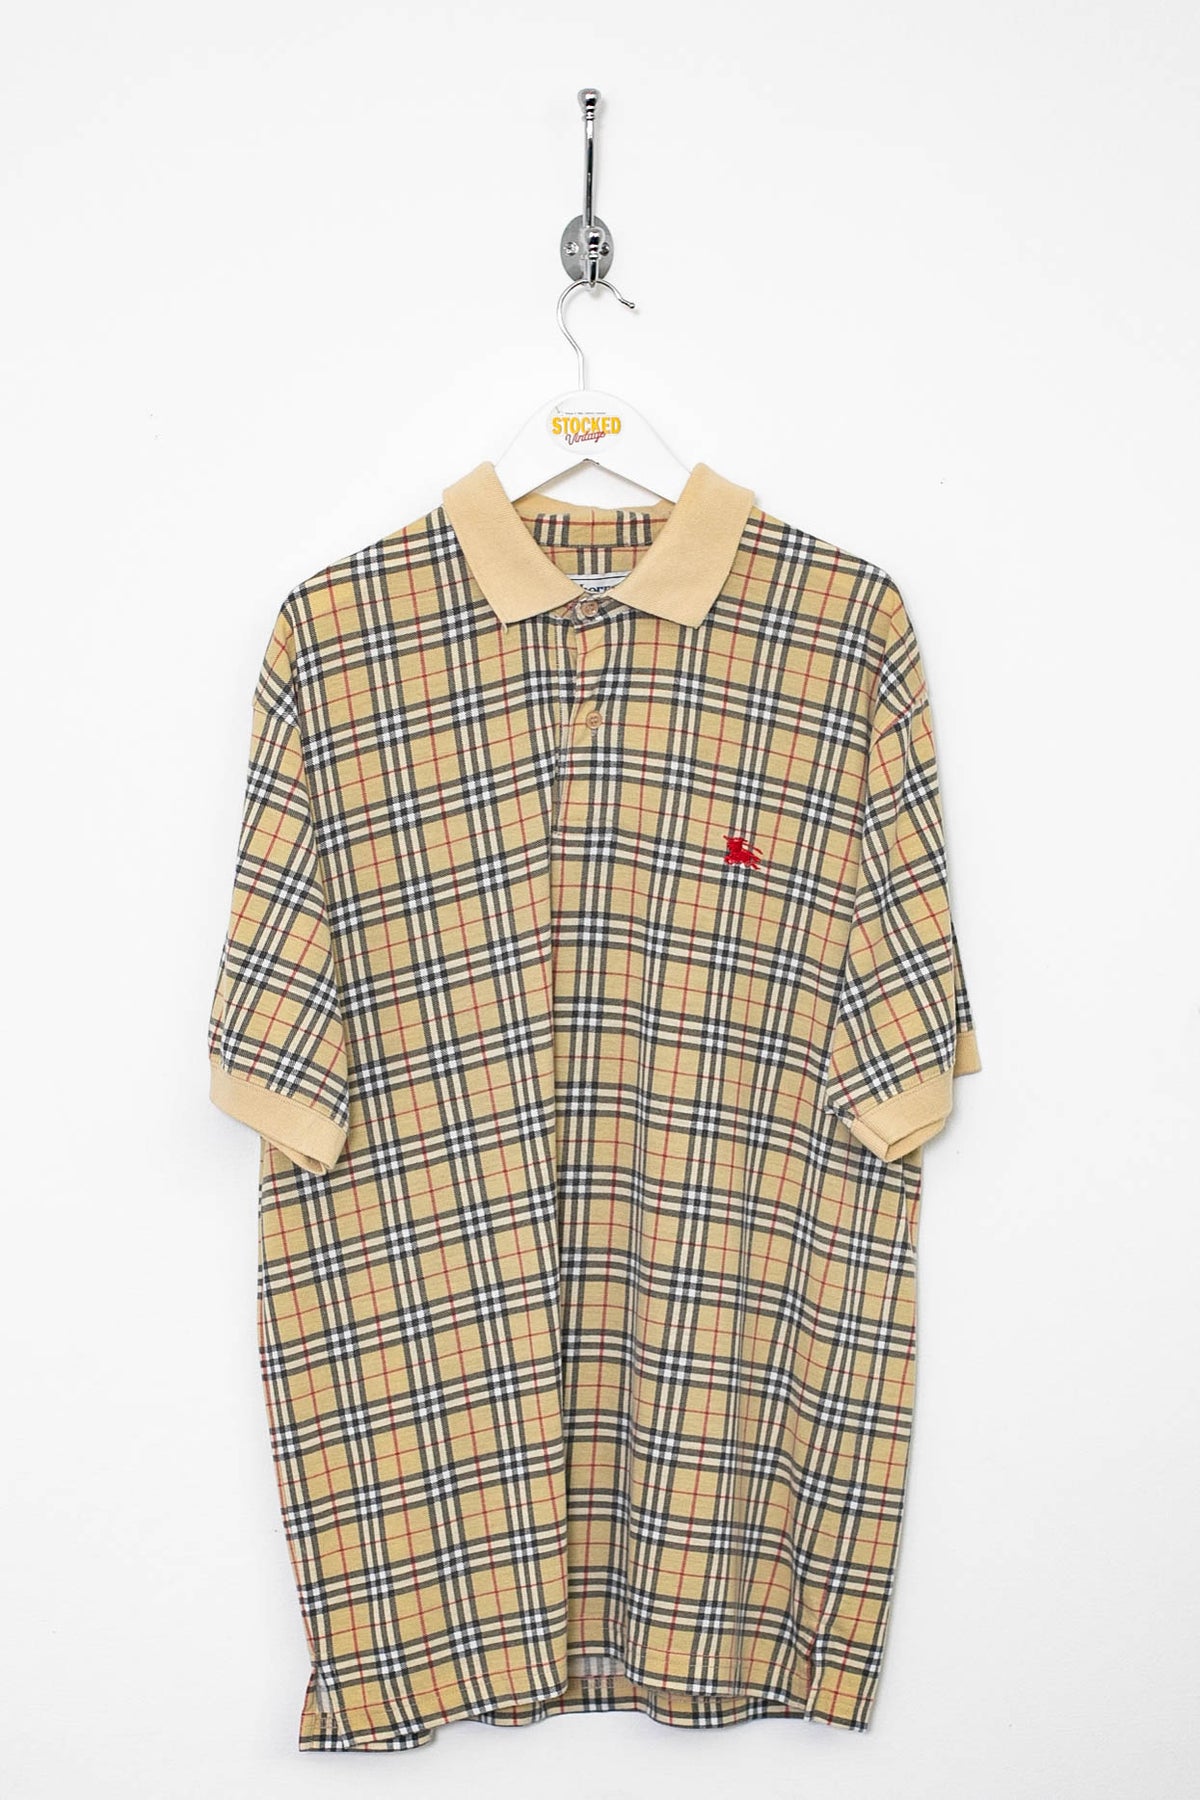 90s Burberry Nova Check Polo Shirt (L)